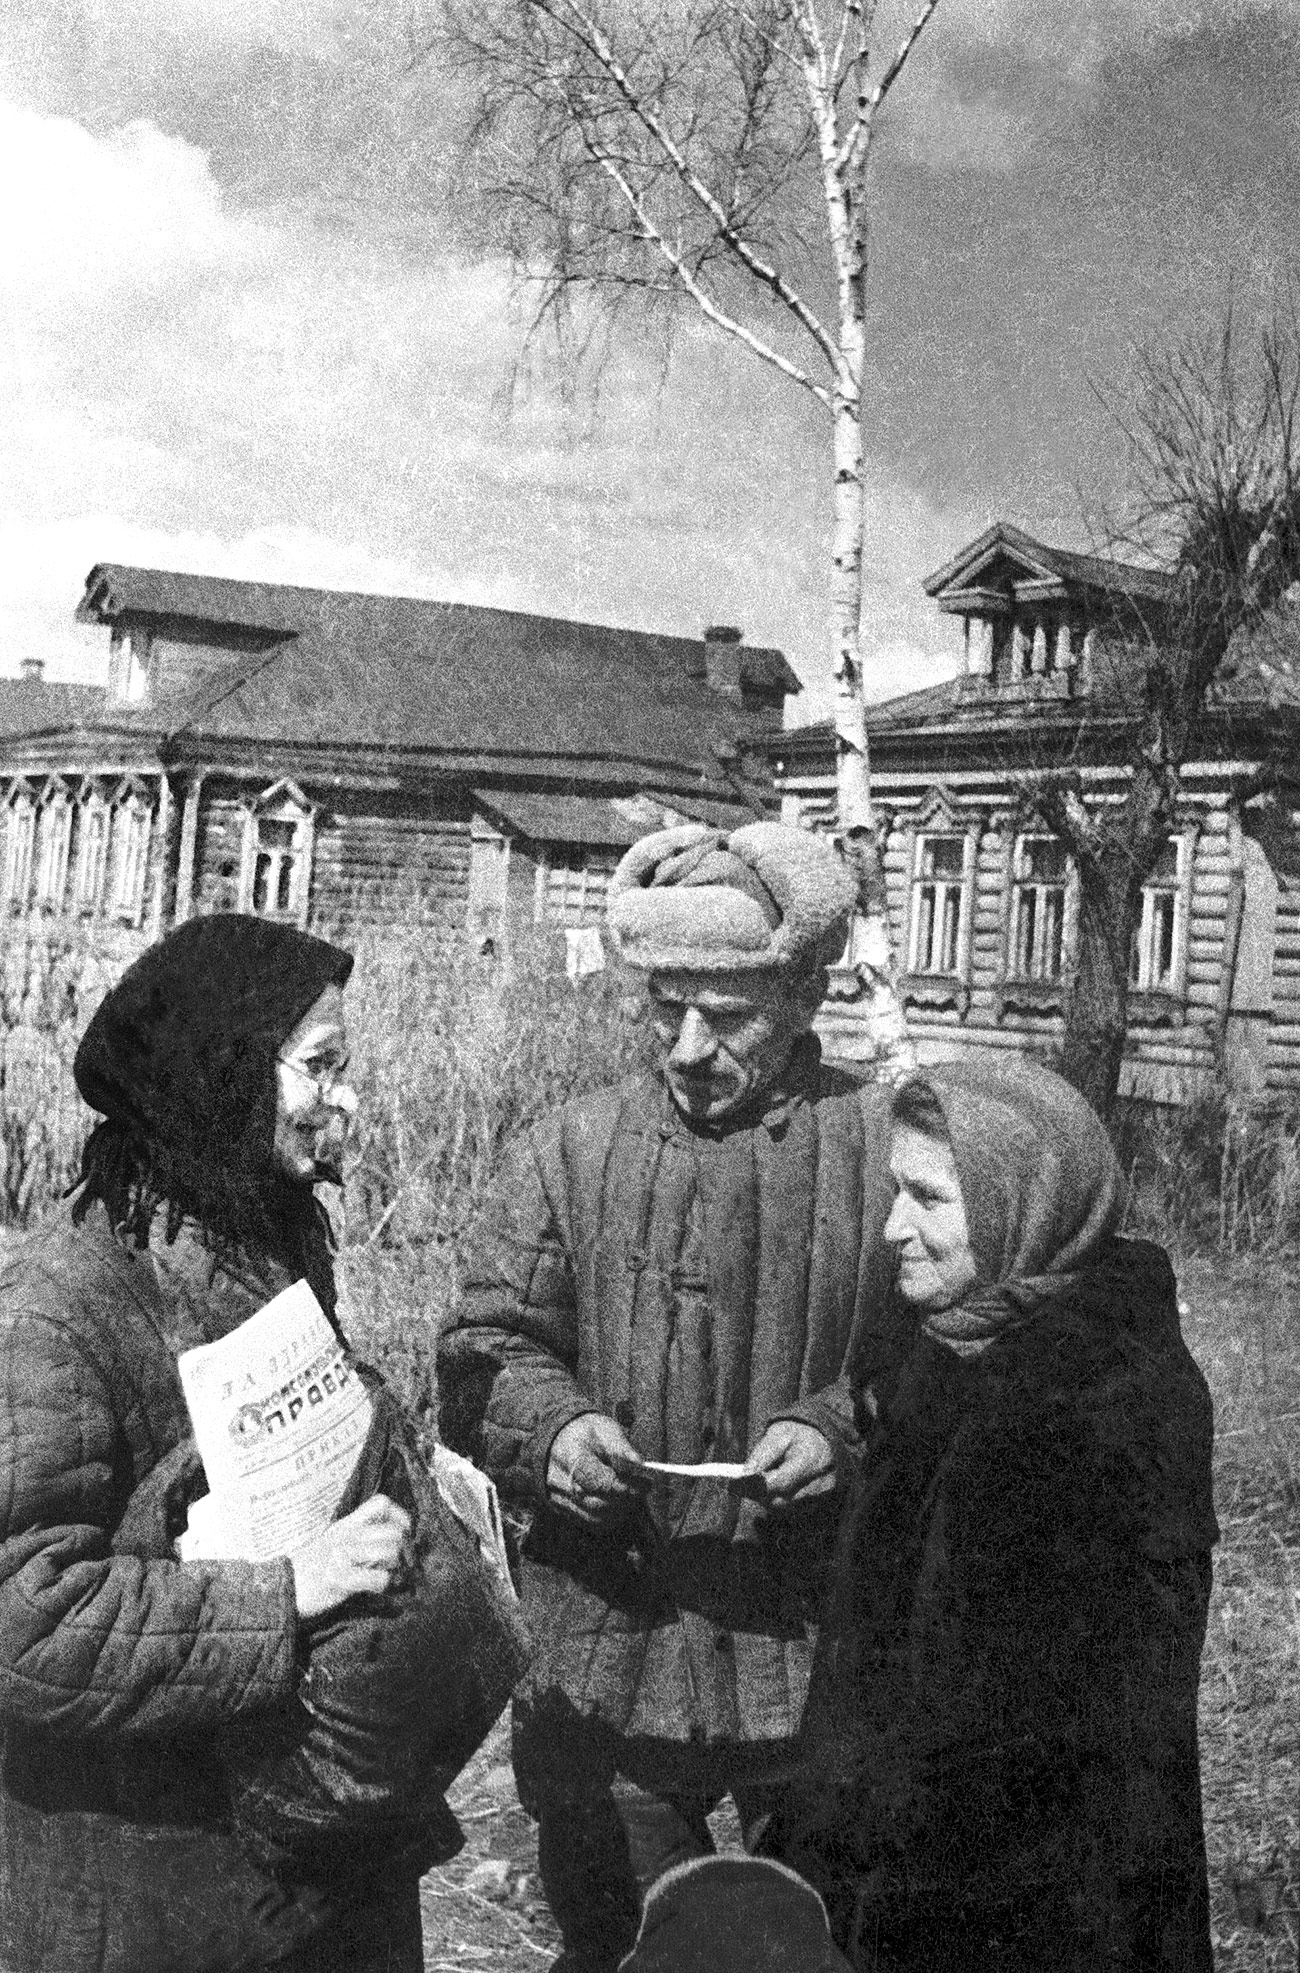 Mnoge četrti, ki se danes nahajajo blizu centra Moskve, so bile polne lesenih hiš in vse do 60-ih so spominjale na vasi. Na fotografiji je nekdanja vas Vihino, ki je danes moskovska četrt.